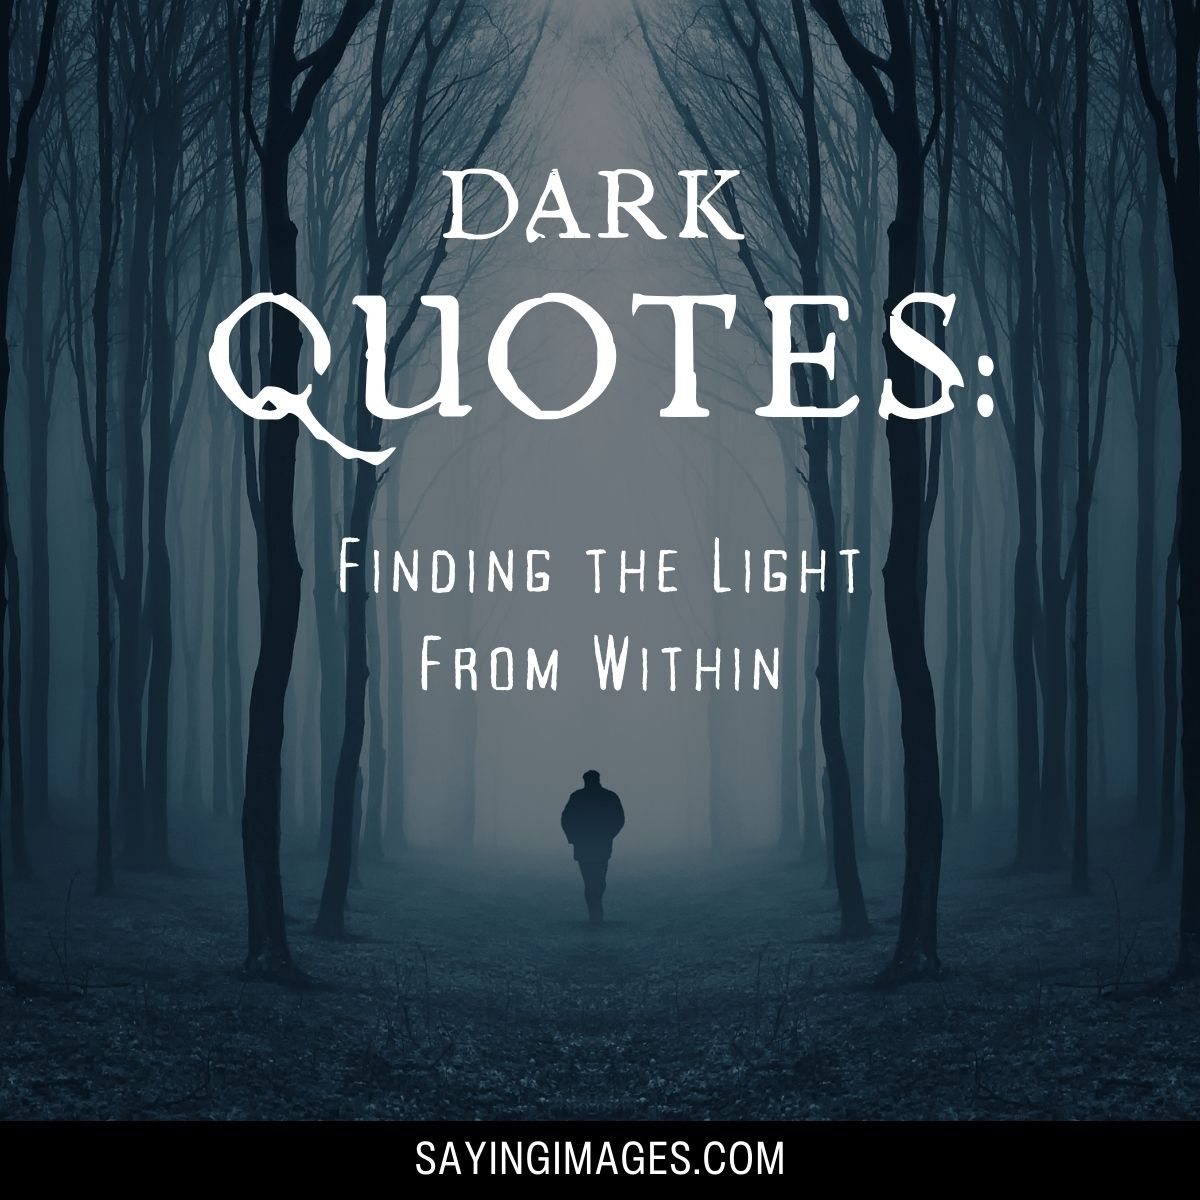 Dark quotes